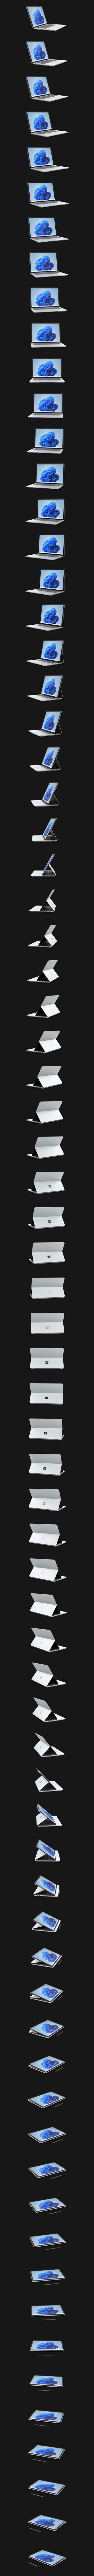 Surface Laptop Studio tournant à 360degrés.